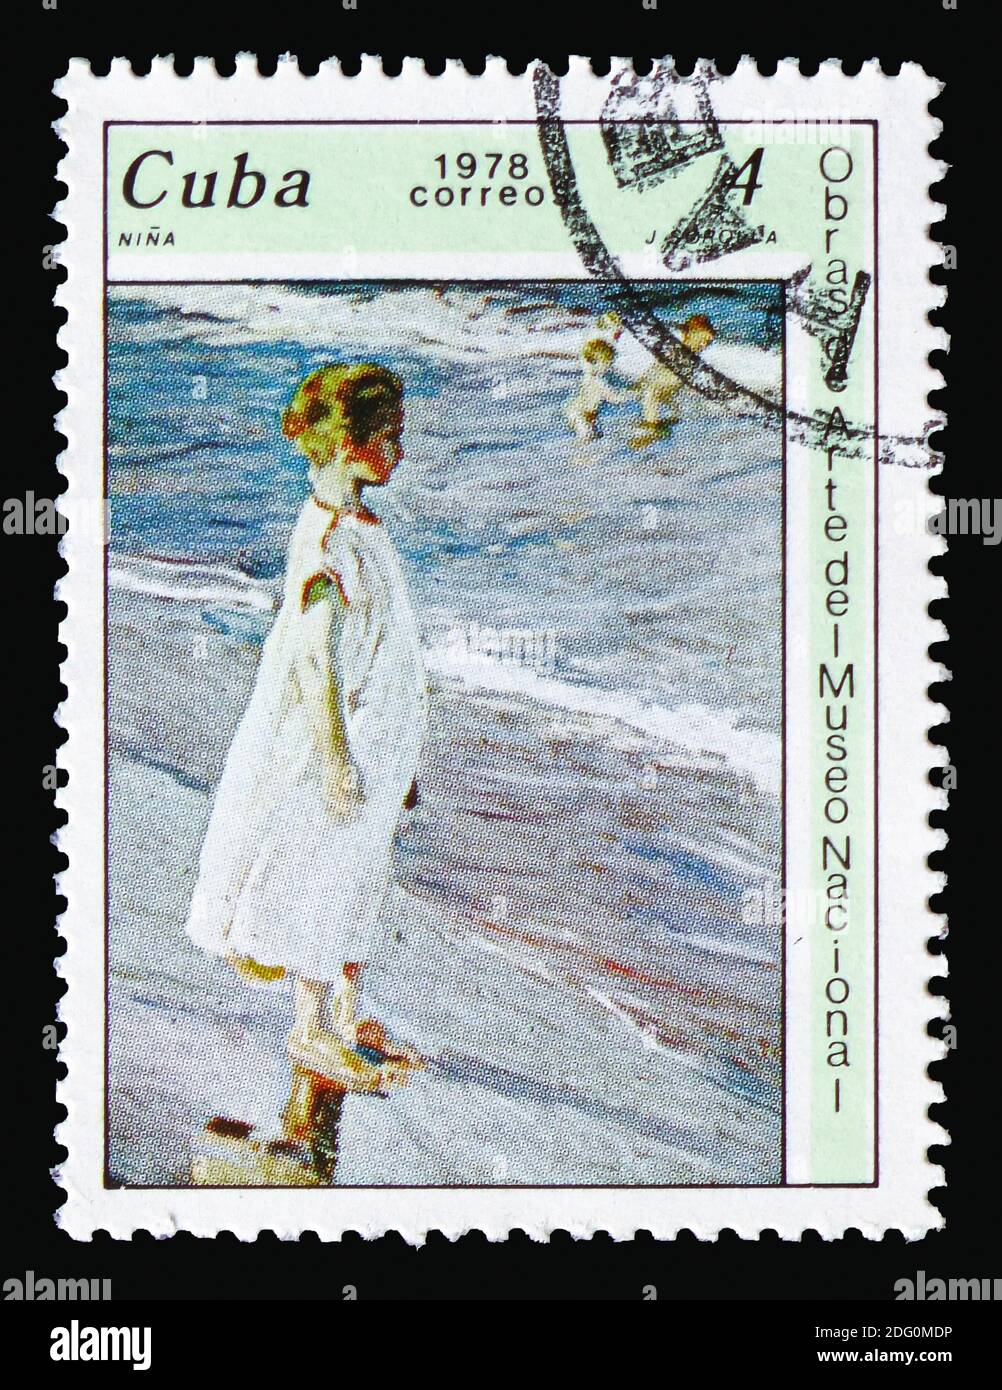 MOSCOU, RUSSIE - 18 AOÛT 2018 : un timbre imprimé à Cuba montre Joaquin Sorolla, 'fille', tableaux de la série du Musée national, vers 1978 Banque D'Images